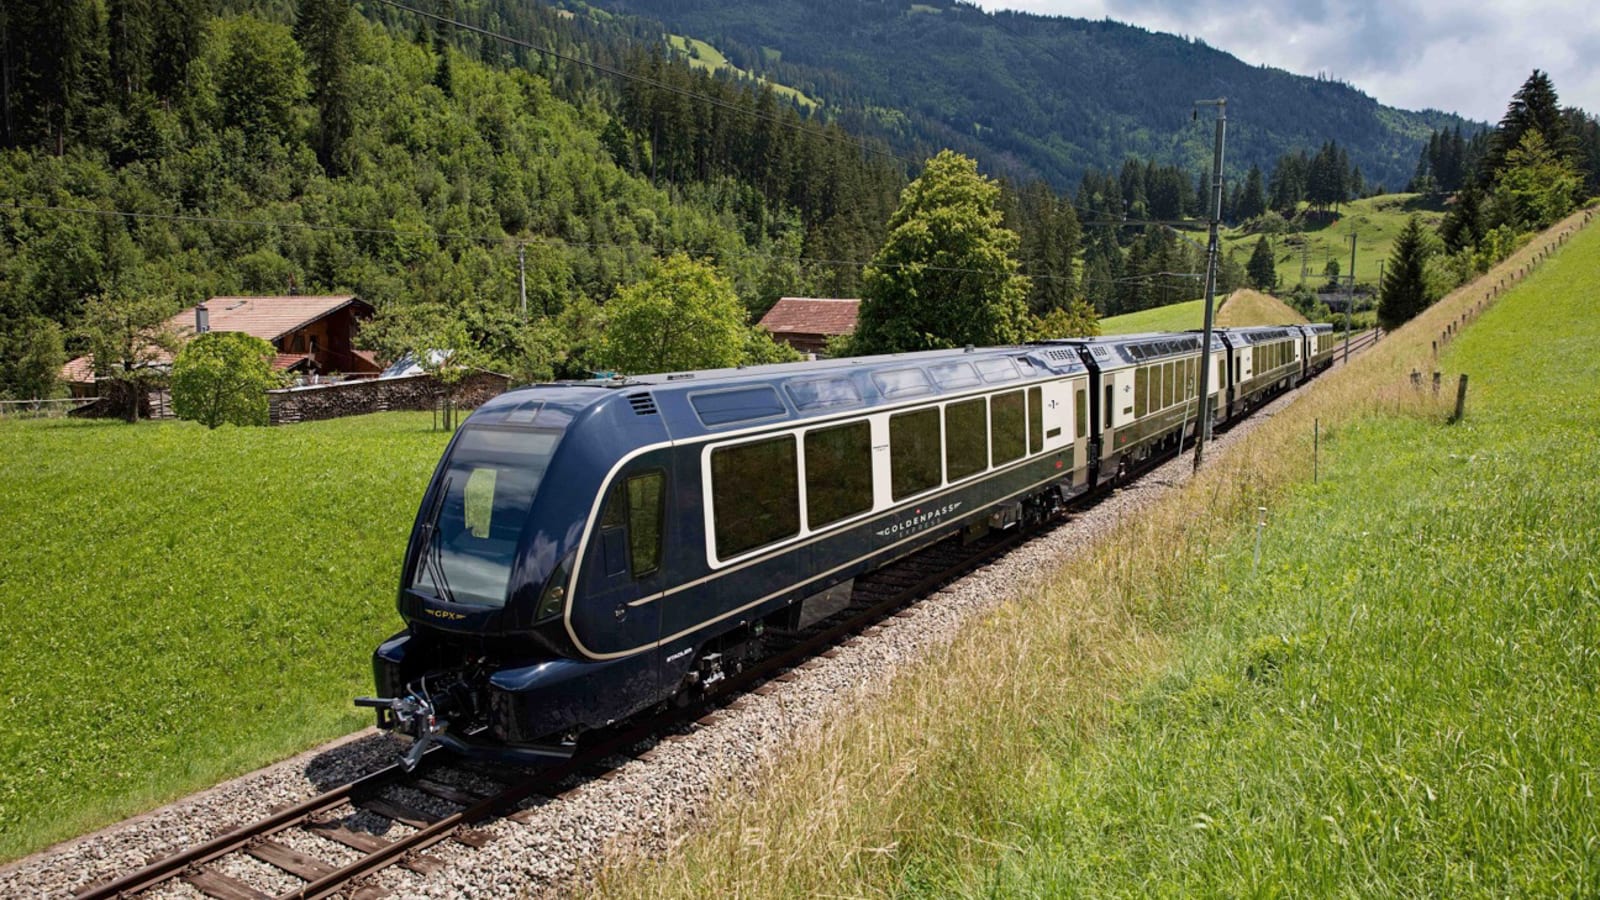 شاهد أطول قطار ركاب في العالم يعبر جبال الألب في سويسرا